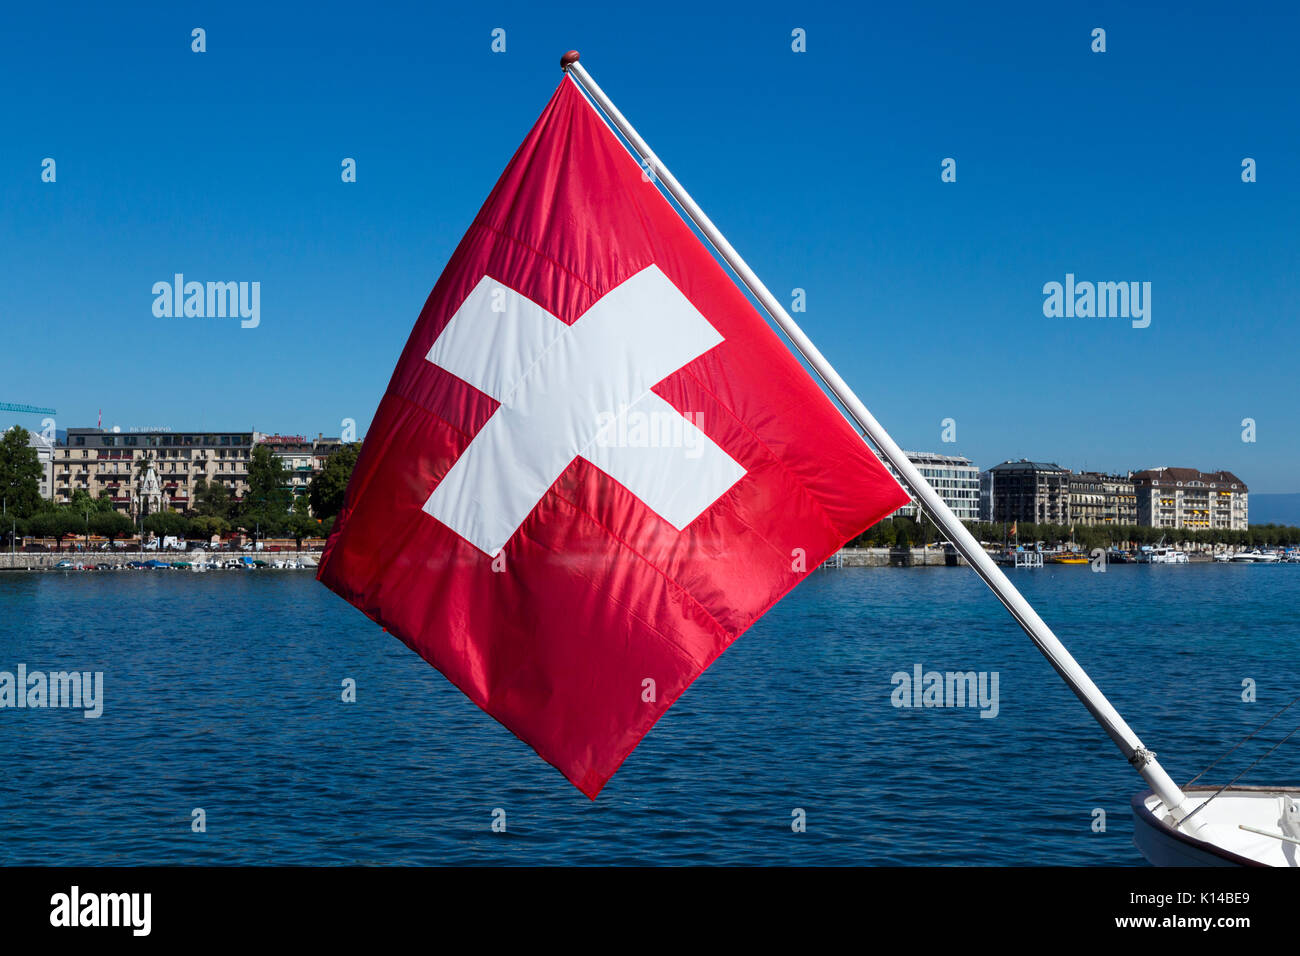 Die Schweizer Fahne, Flagge Schweiz, fliegen über den Genfer See/Lac Léman.  Genf/Geneve, Schweiz Stockfotografie - Alamy